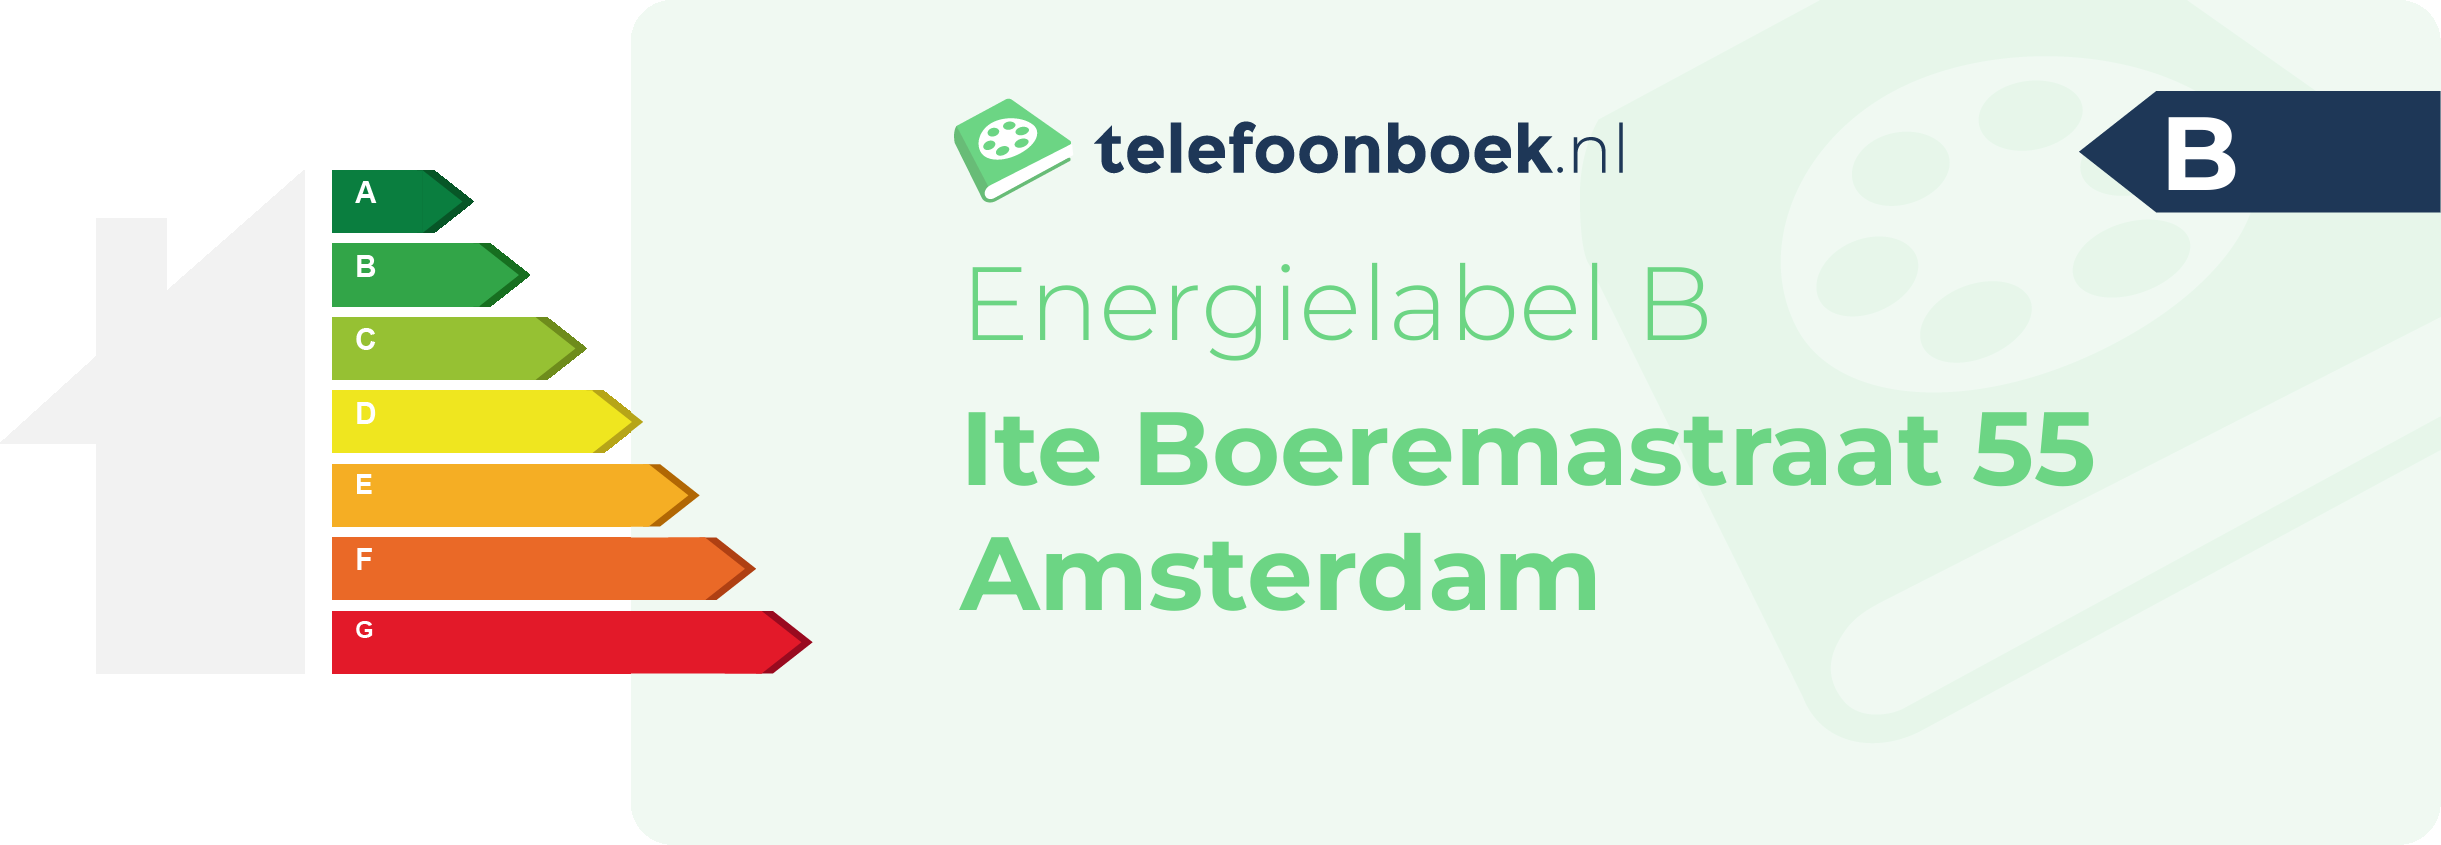 Energielabel Ite Boeremastraat 55 Amsterdam